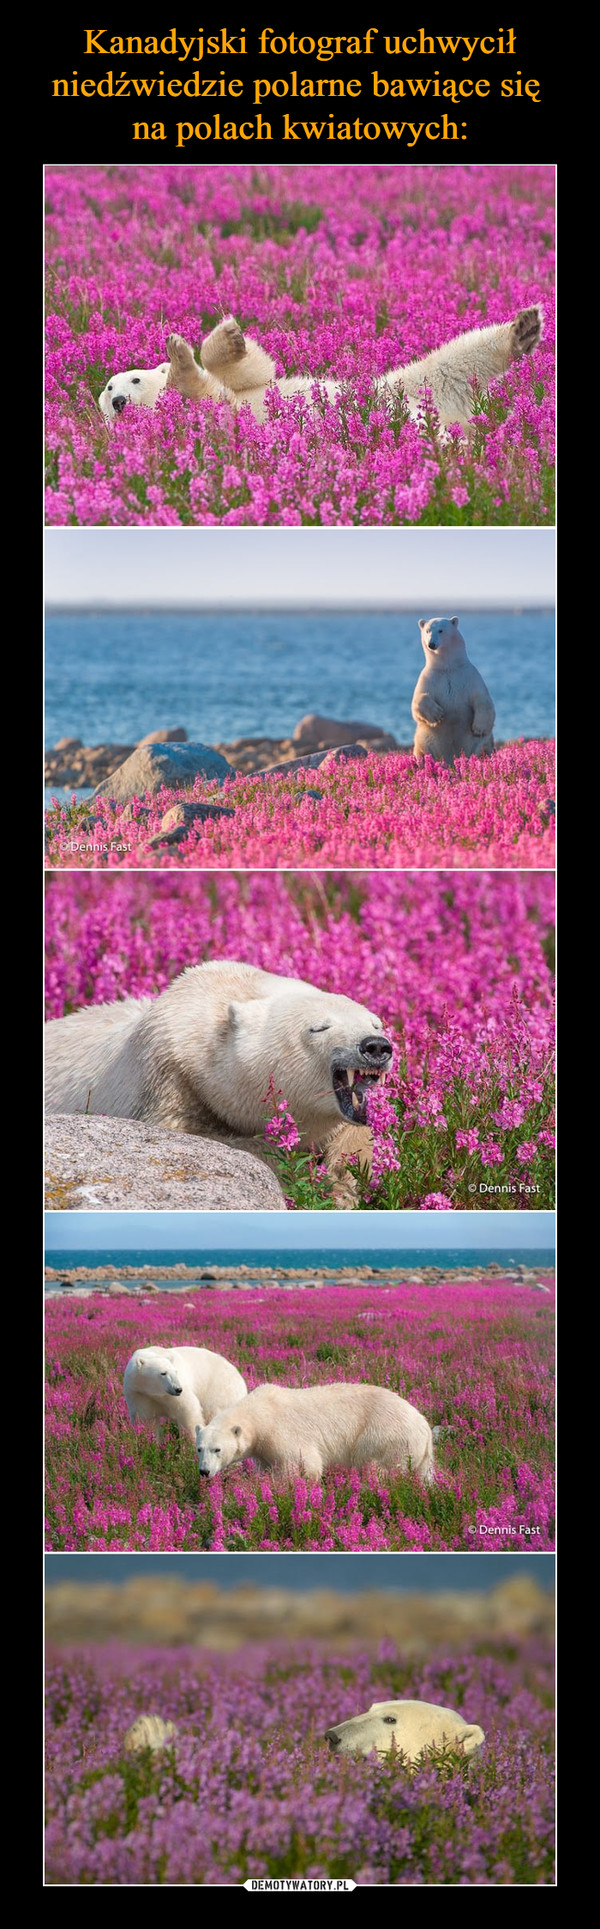 Kanadyjski fotograf uchwycił niedźwiedzie polarne bawiące się 
na polach kwiatowych: